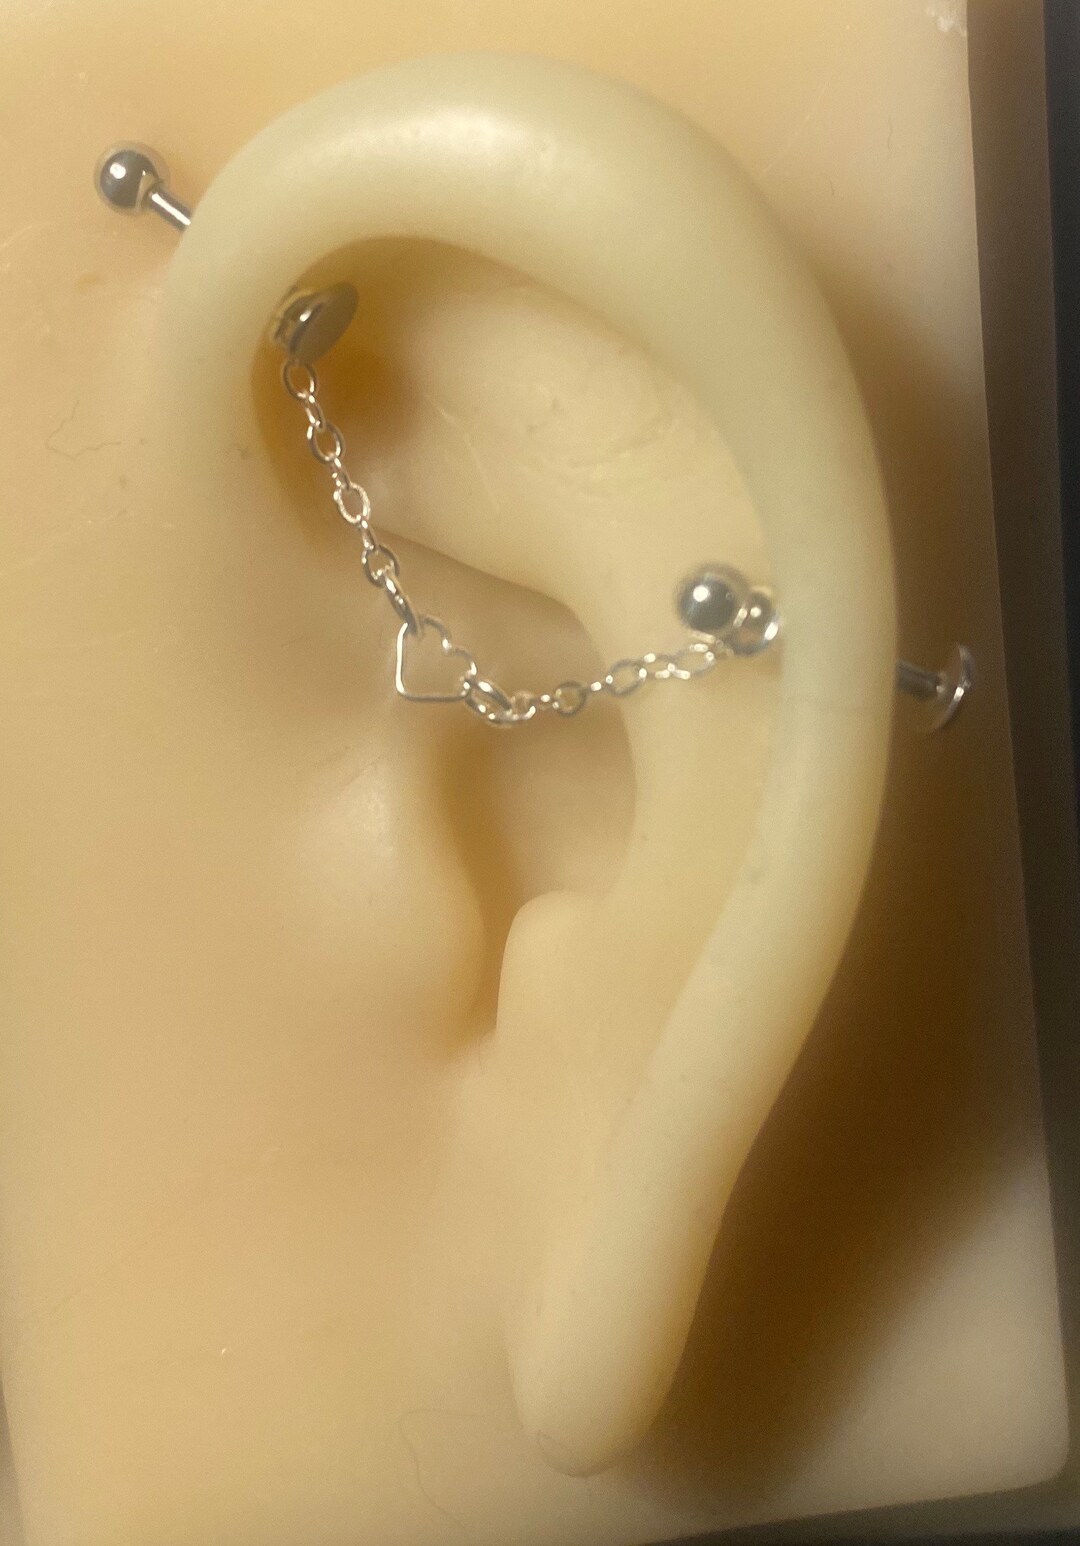 Heart Ear Chain Ear Piercing Chain Industrial - Etsy